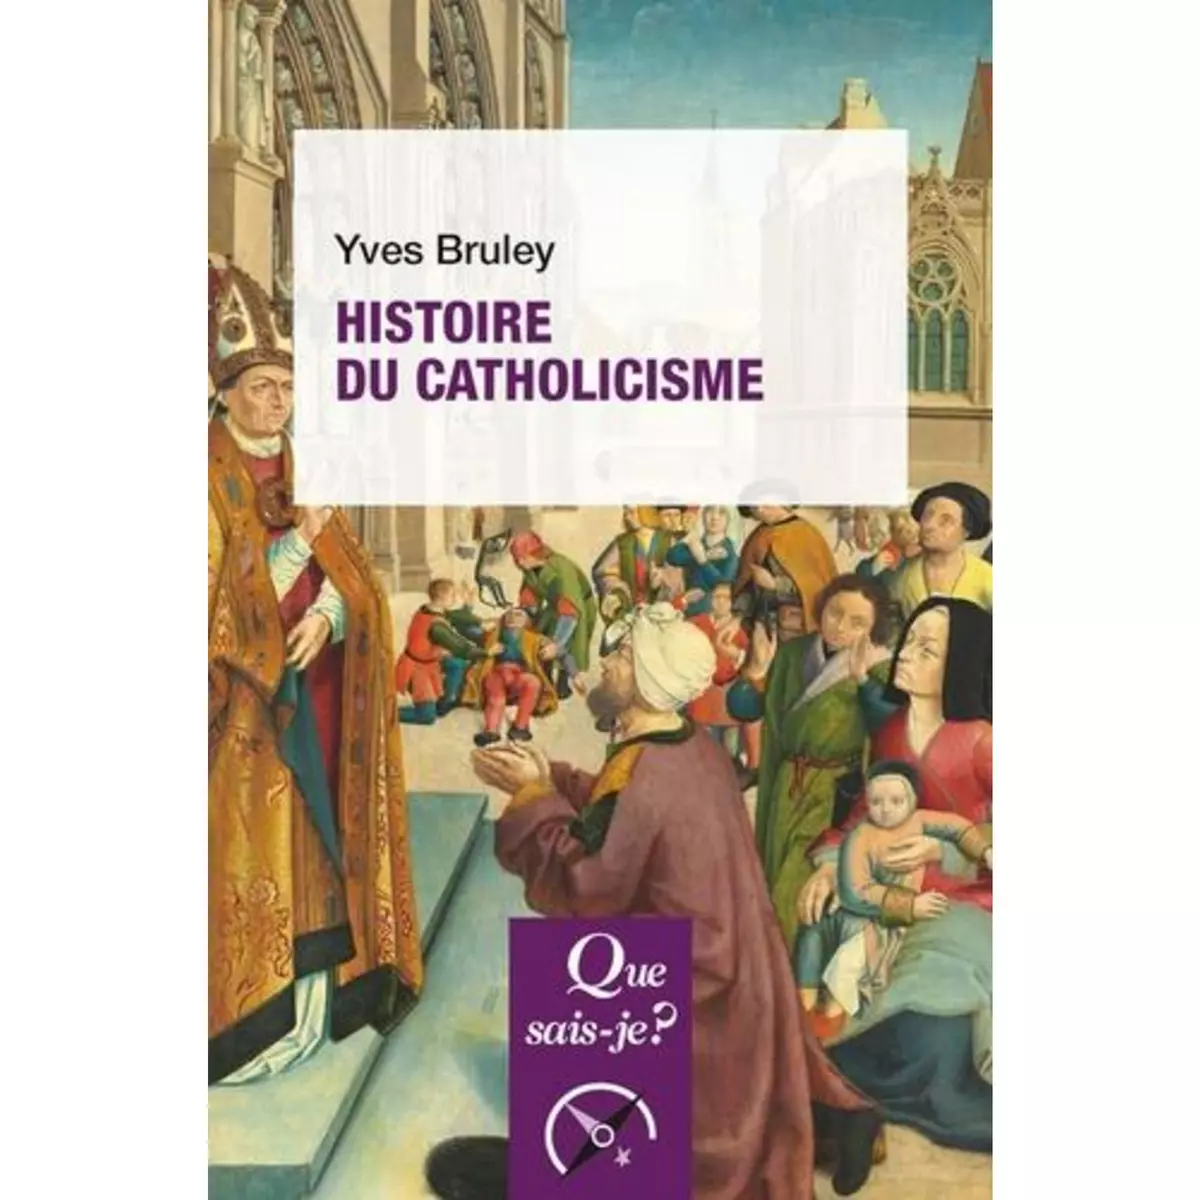  HISTOIRE DU CATHOLICISME. 5E EDITION, Bruley Yves